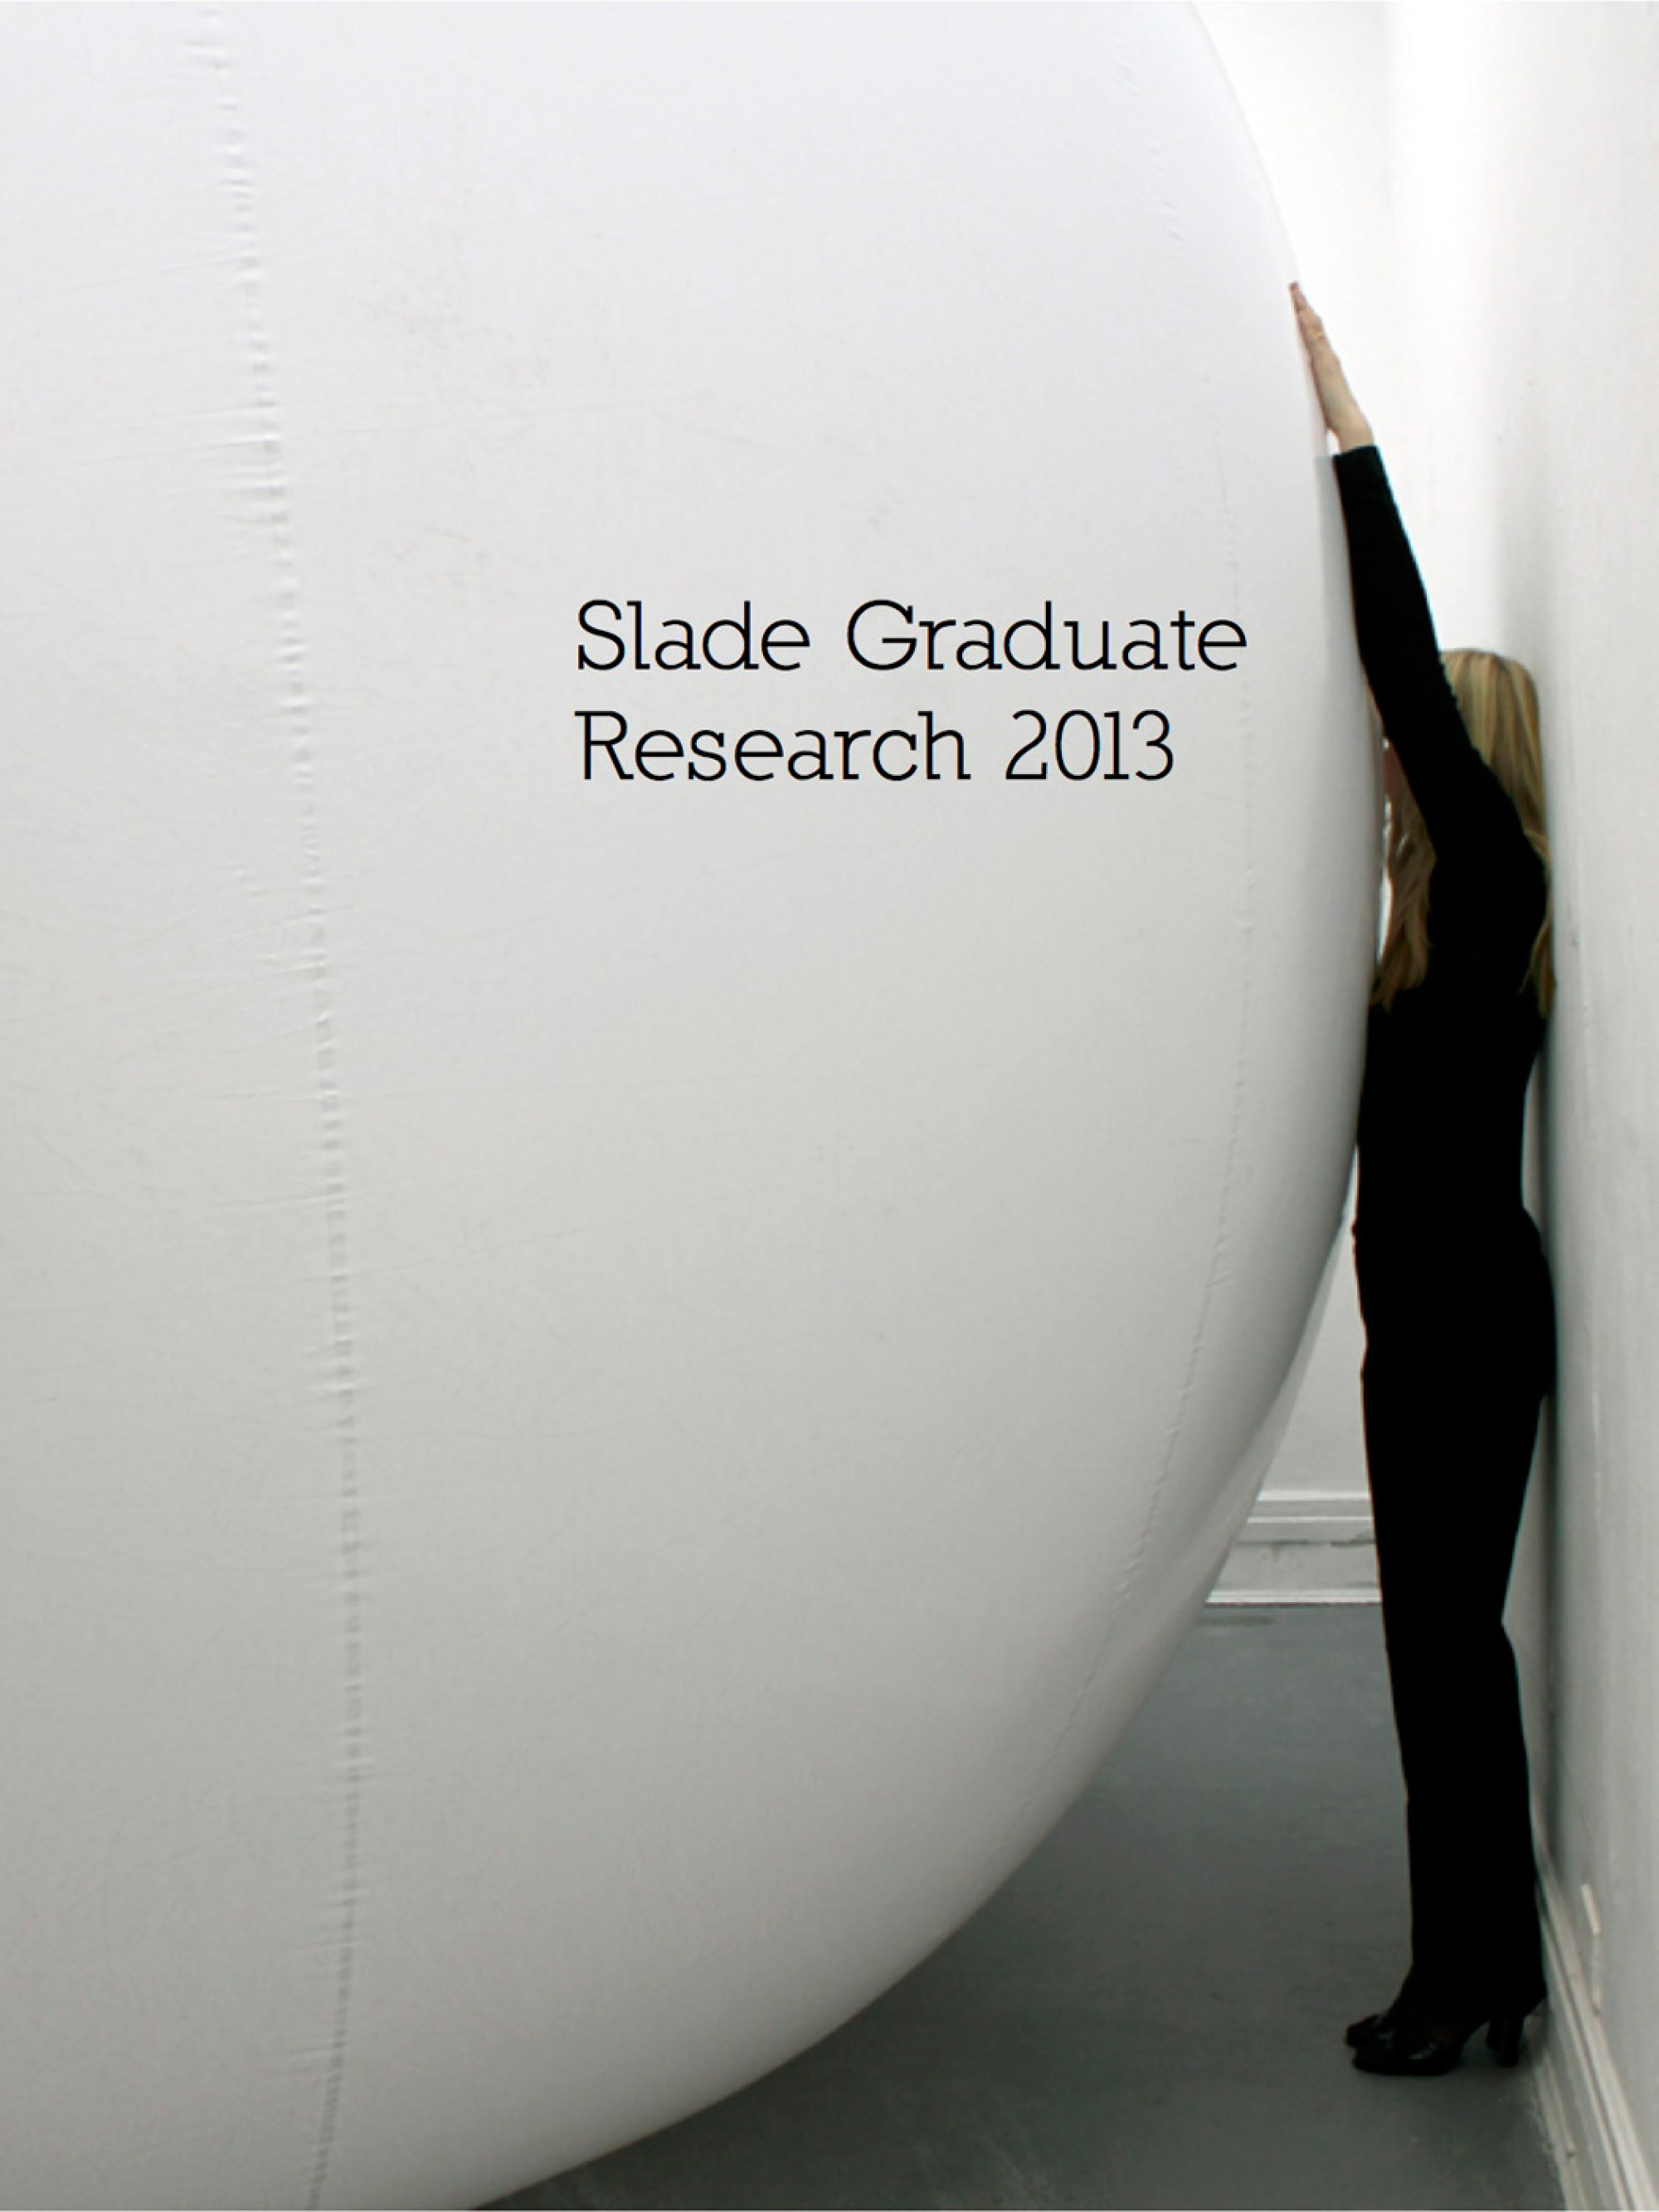 Graduate Research 2013